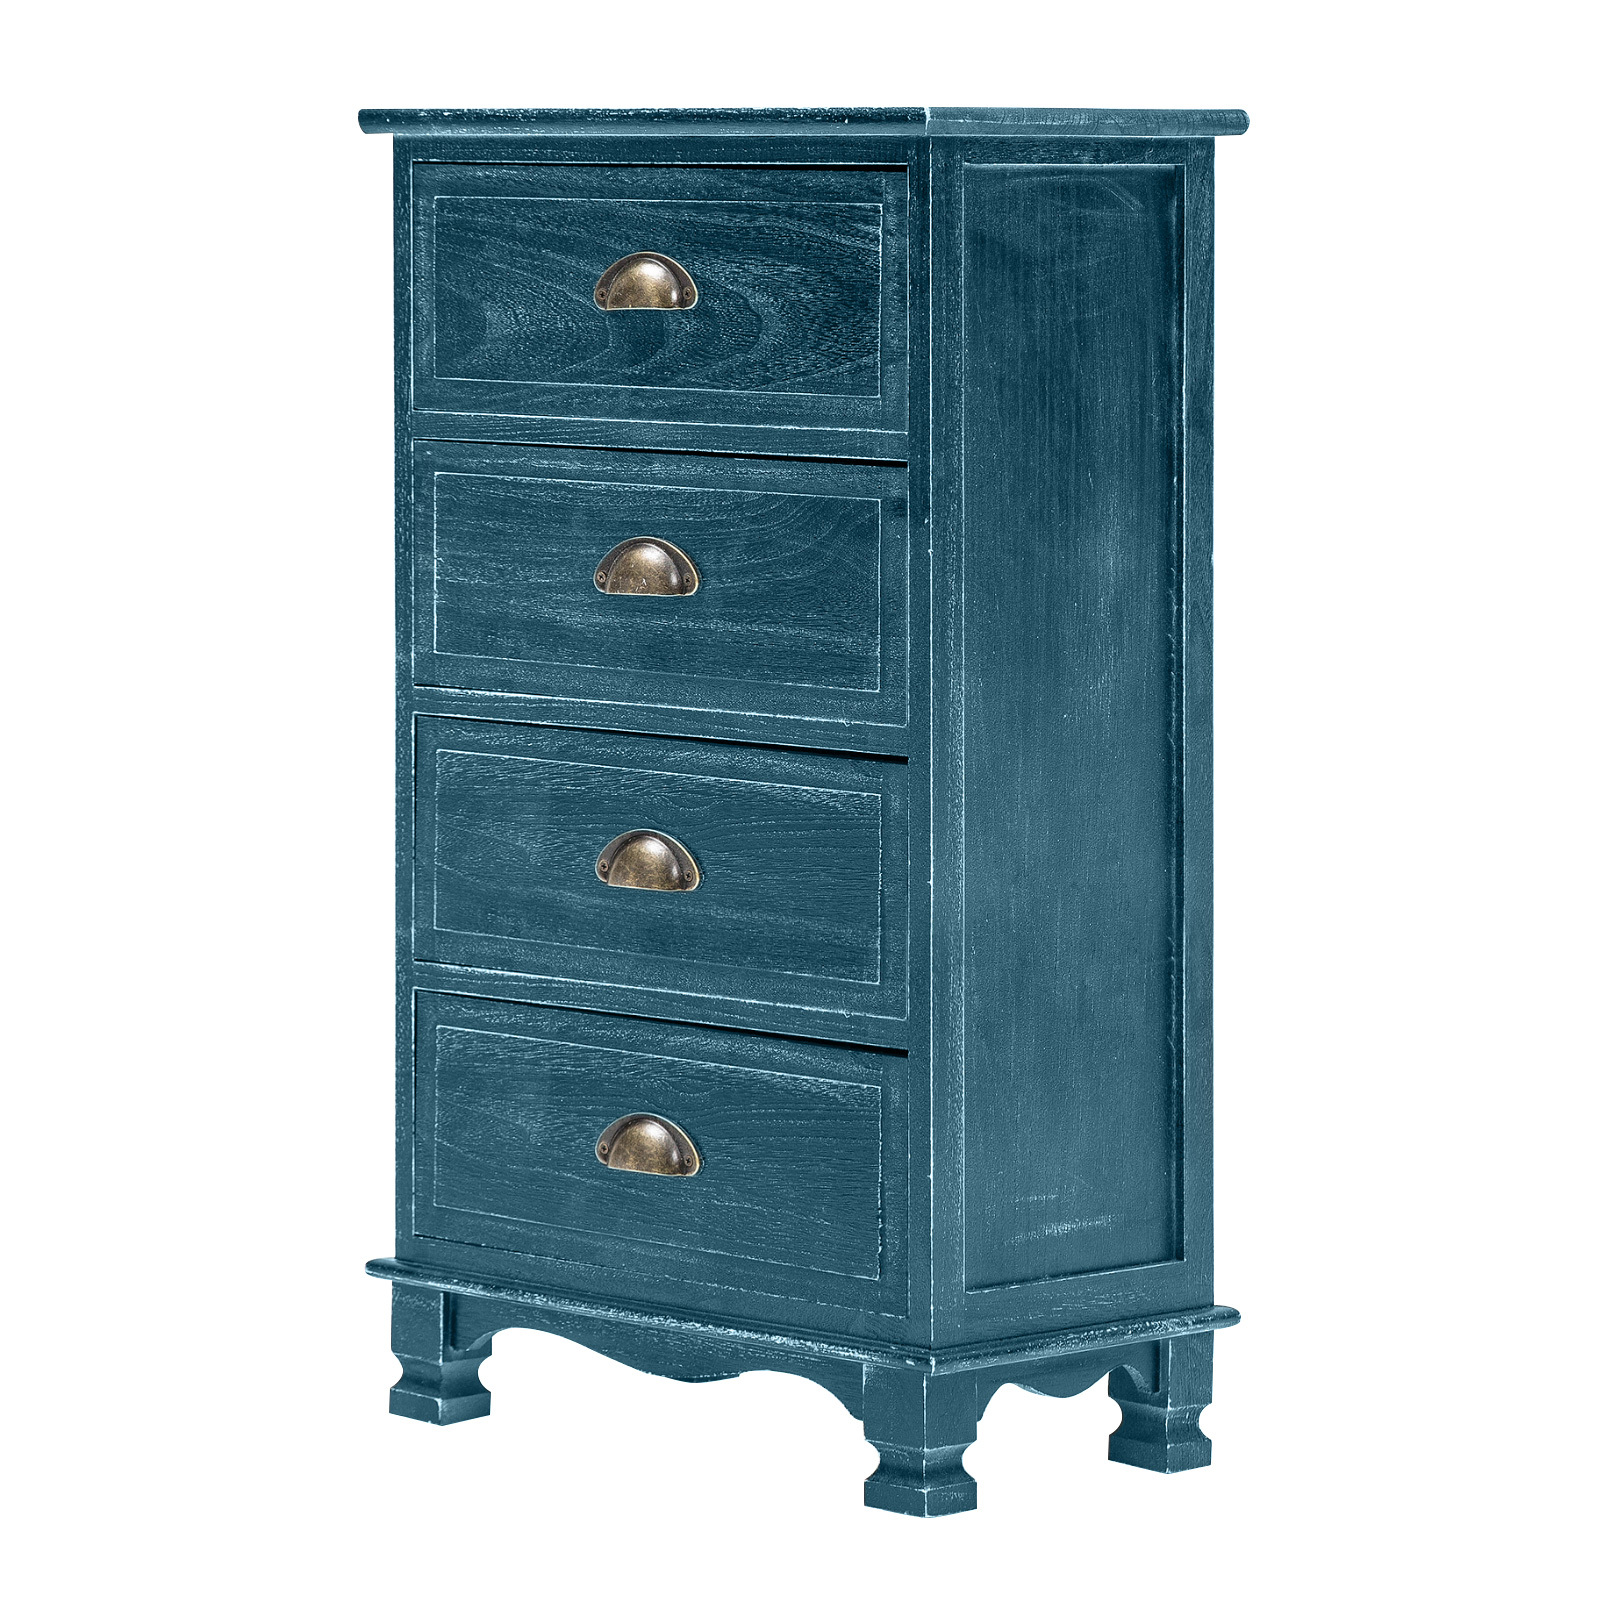 Vintage Storage Cabinet Bedside Table 4 Drawer ADELINE - BLUE